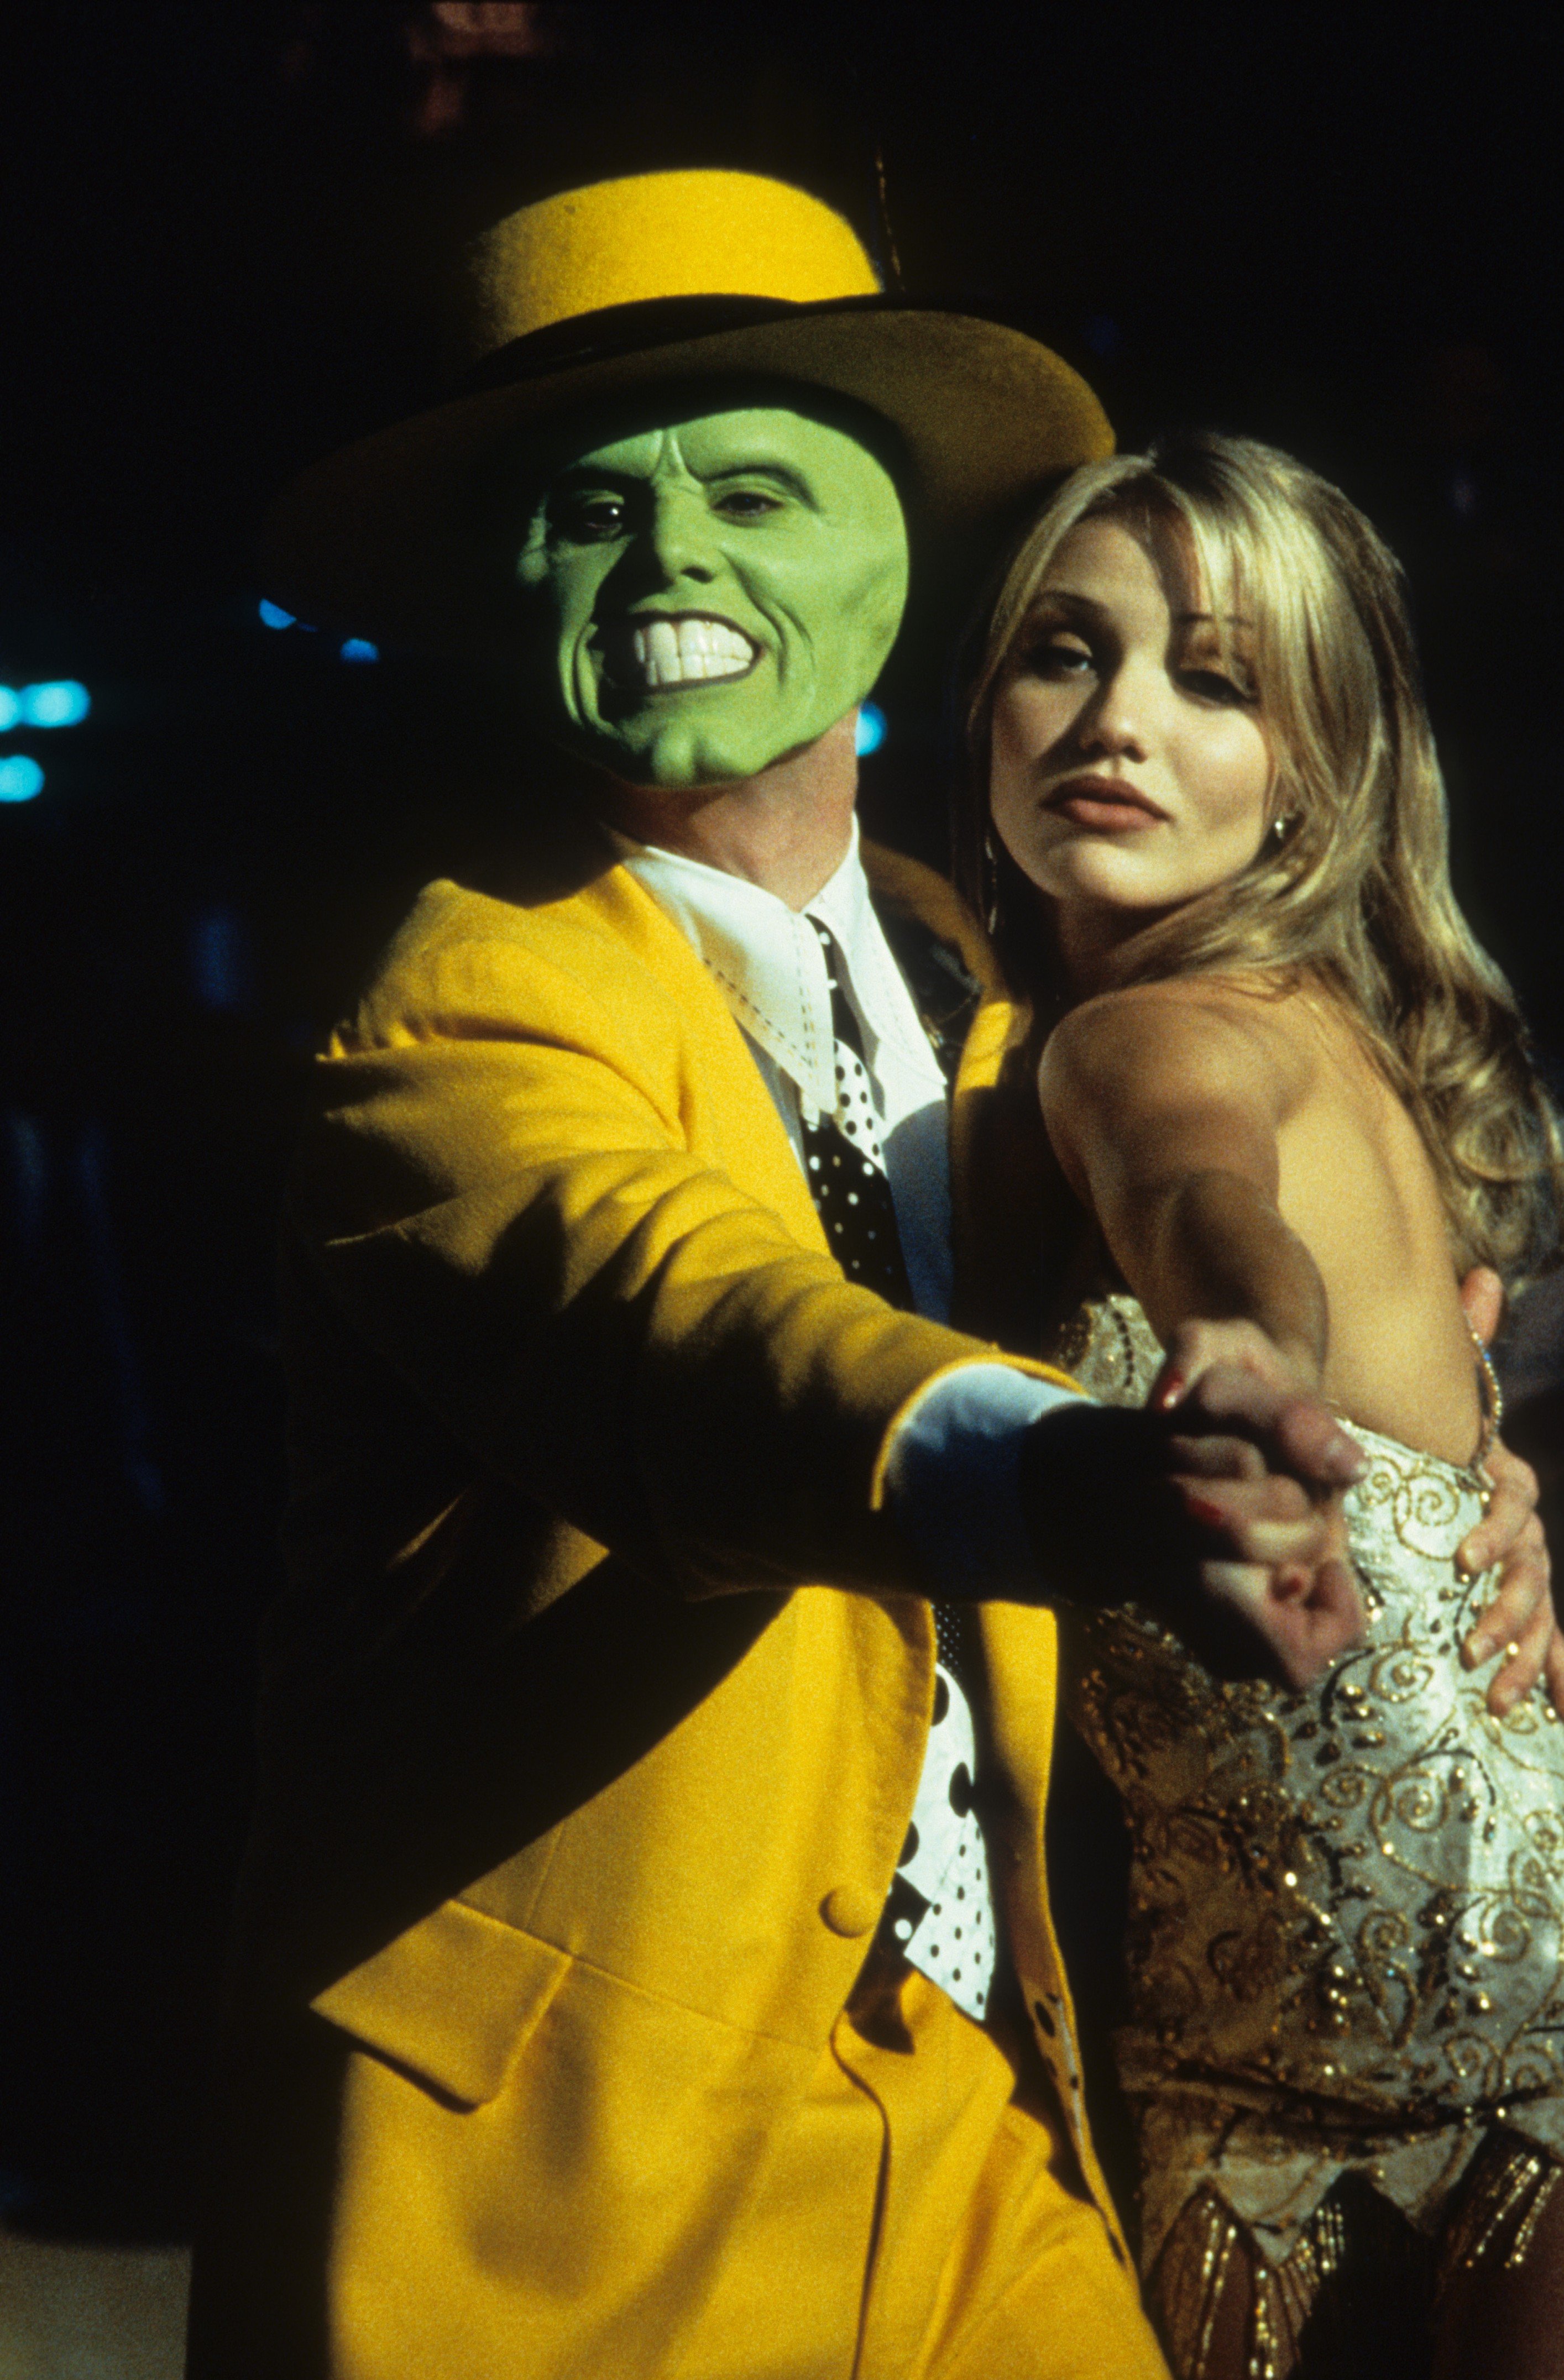 Jim Carrey tanzt mit Cameron Diaz in einer Szene aus dem Film "The Mask" im Jahr 1994 | Quelle: Getty Images